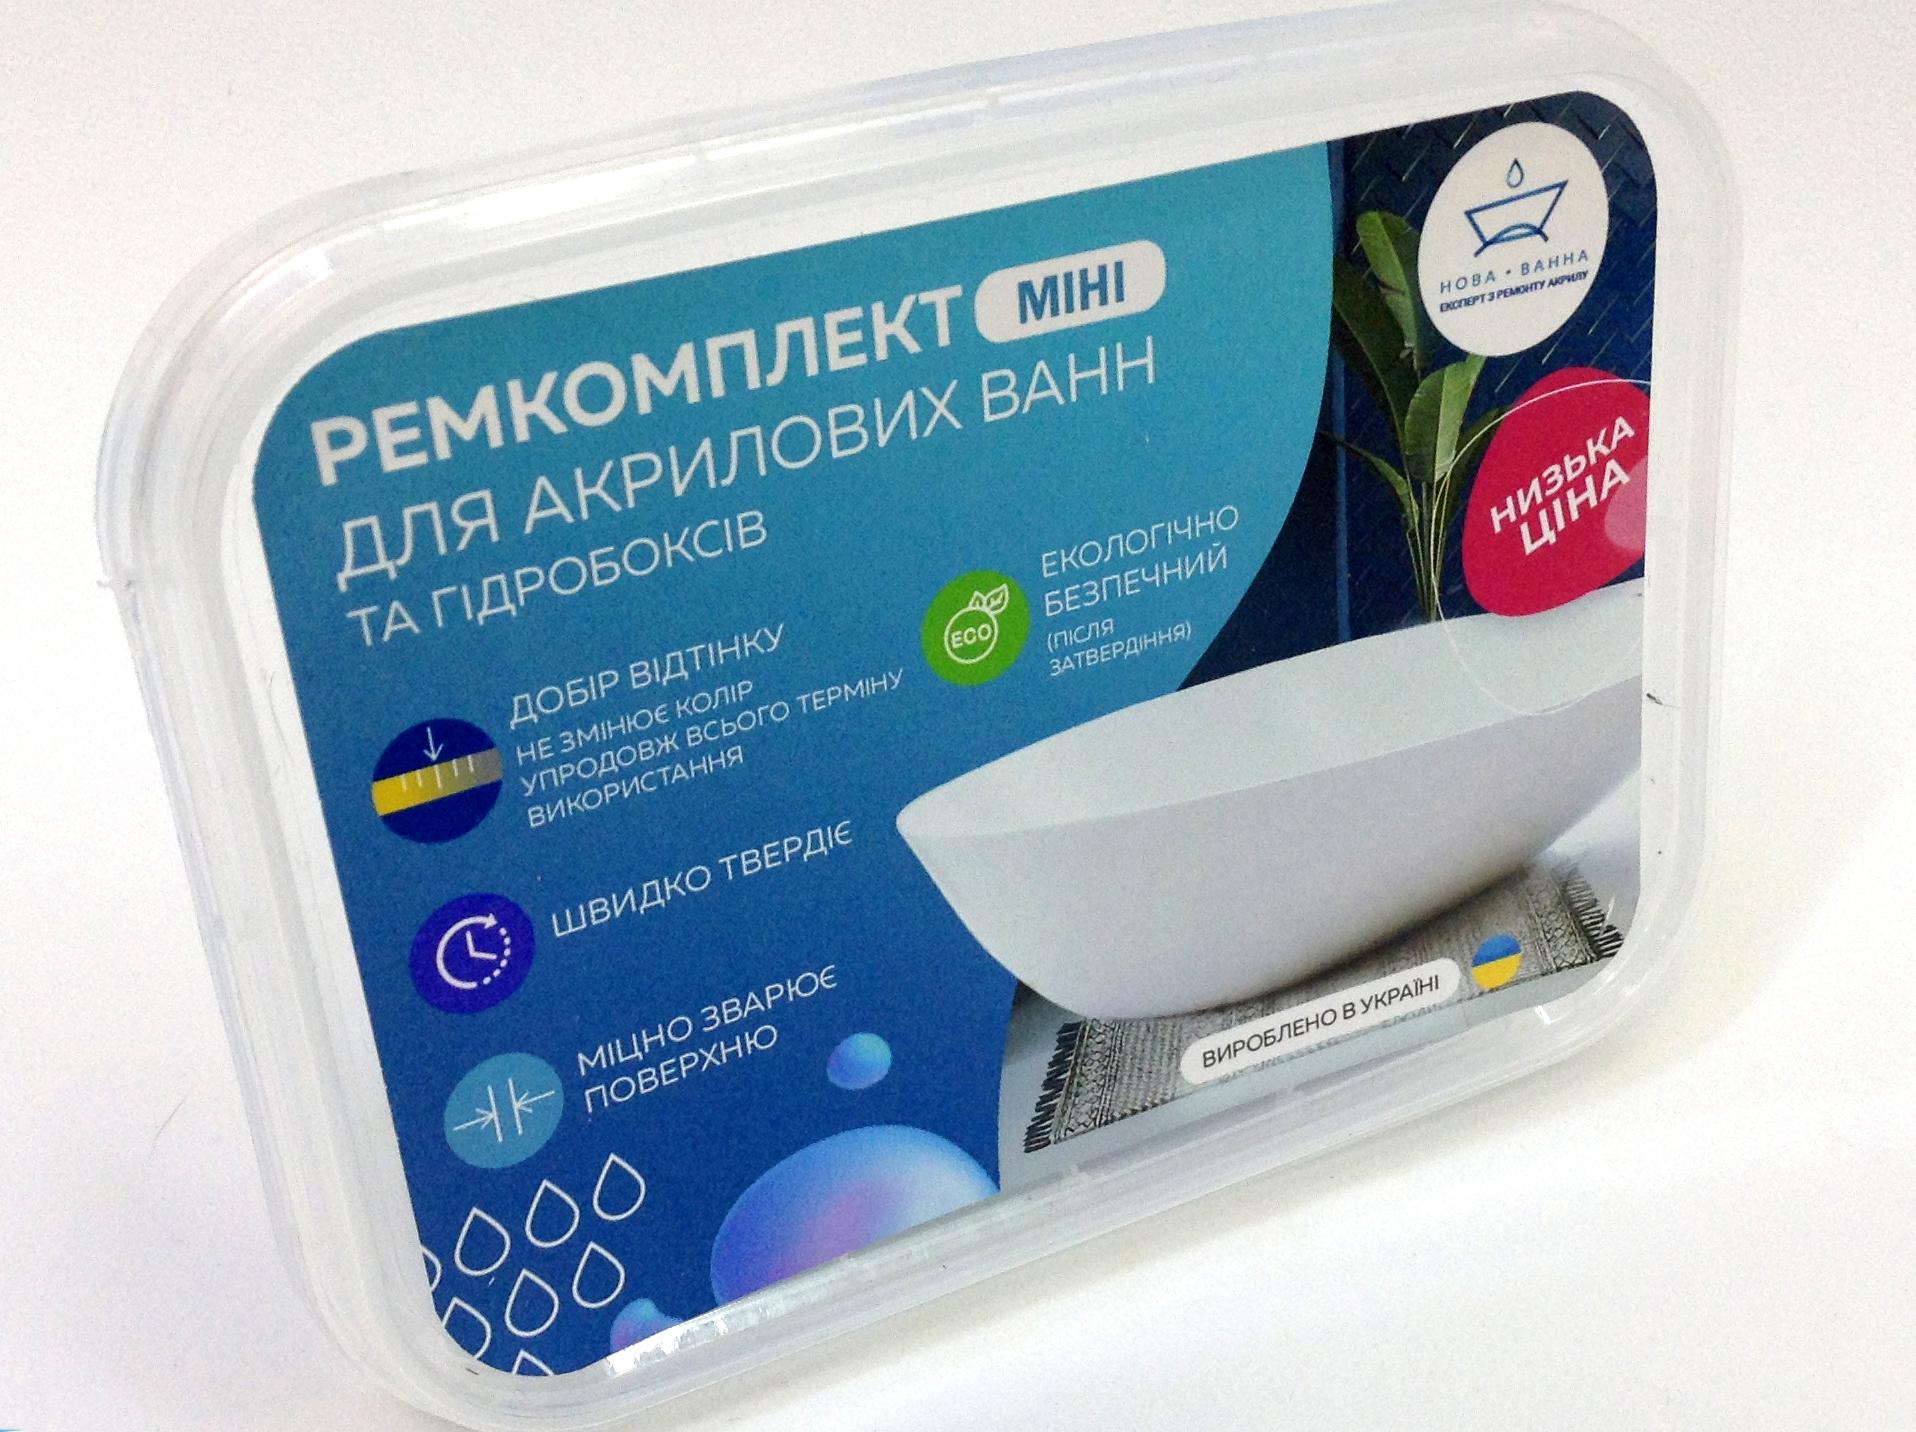 Ремкомплект для акриловых ванн НОВАЯ-ВАННА мини для устранения царапин и сколов